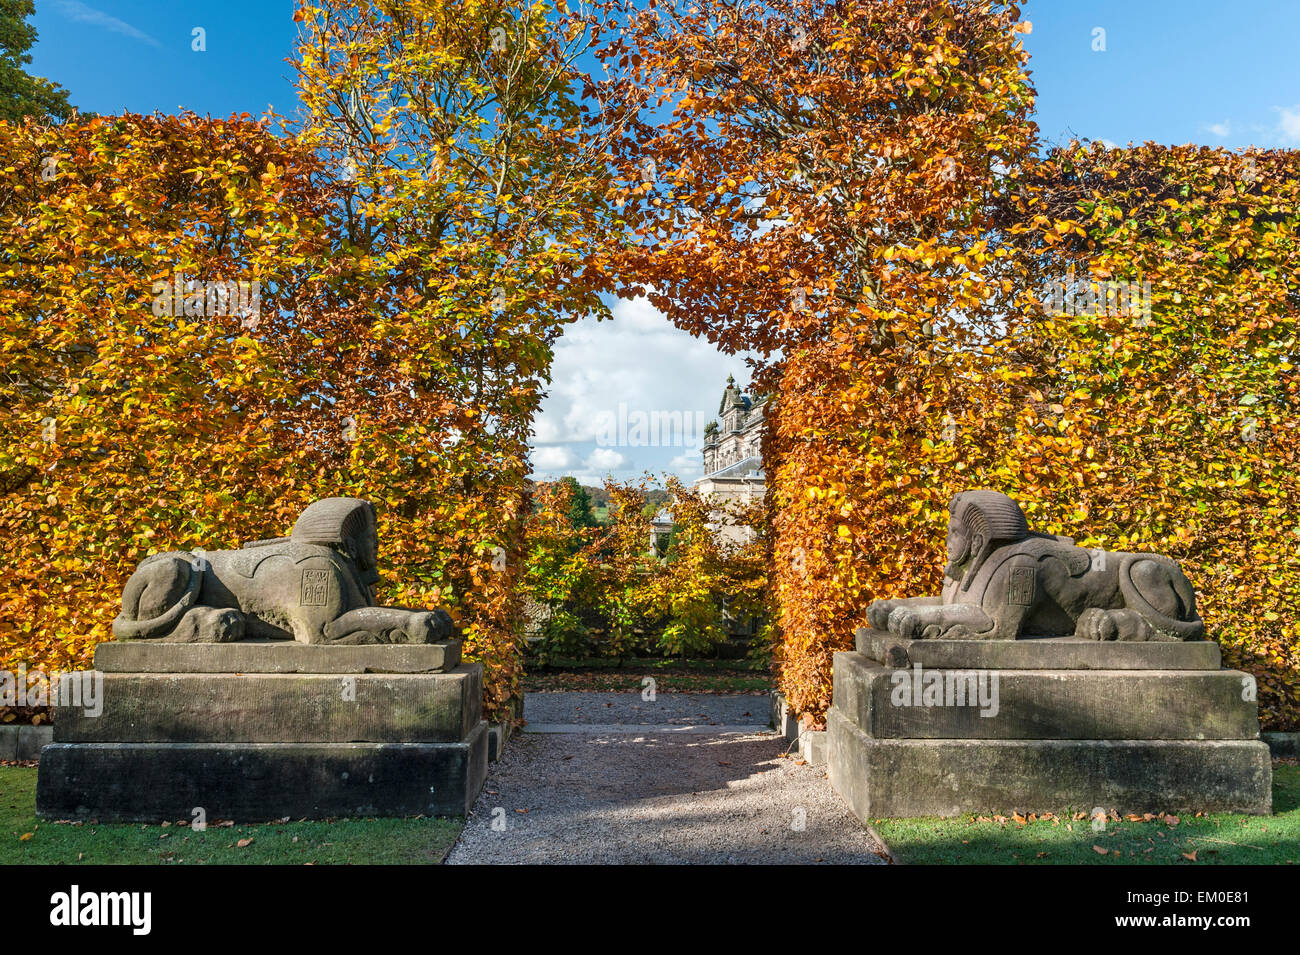 Biddulph Grange giardino, Staffordshire, Regno Unito, in autunno. Una coppia di sfingi di pietra nel "Egitto" giardino, con agganciato il faggio hedge Foto Stock